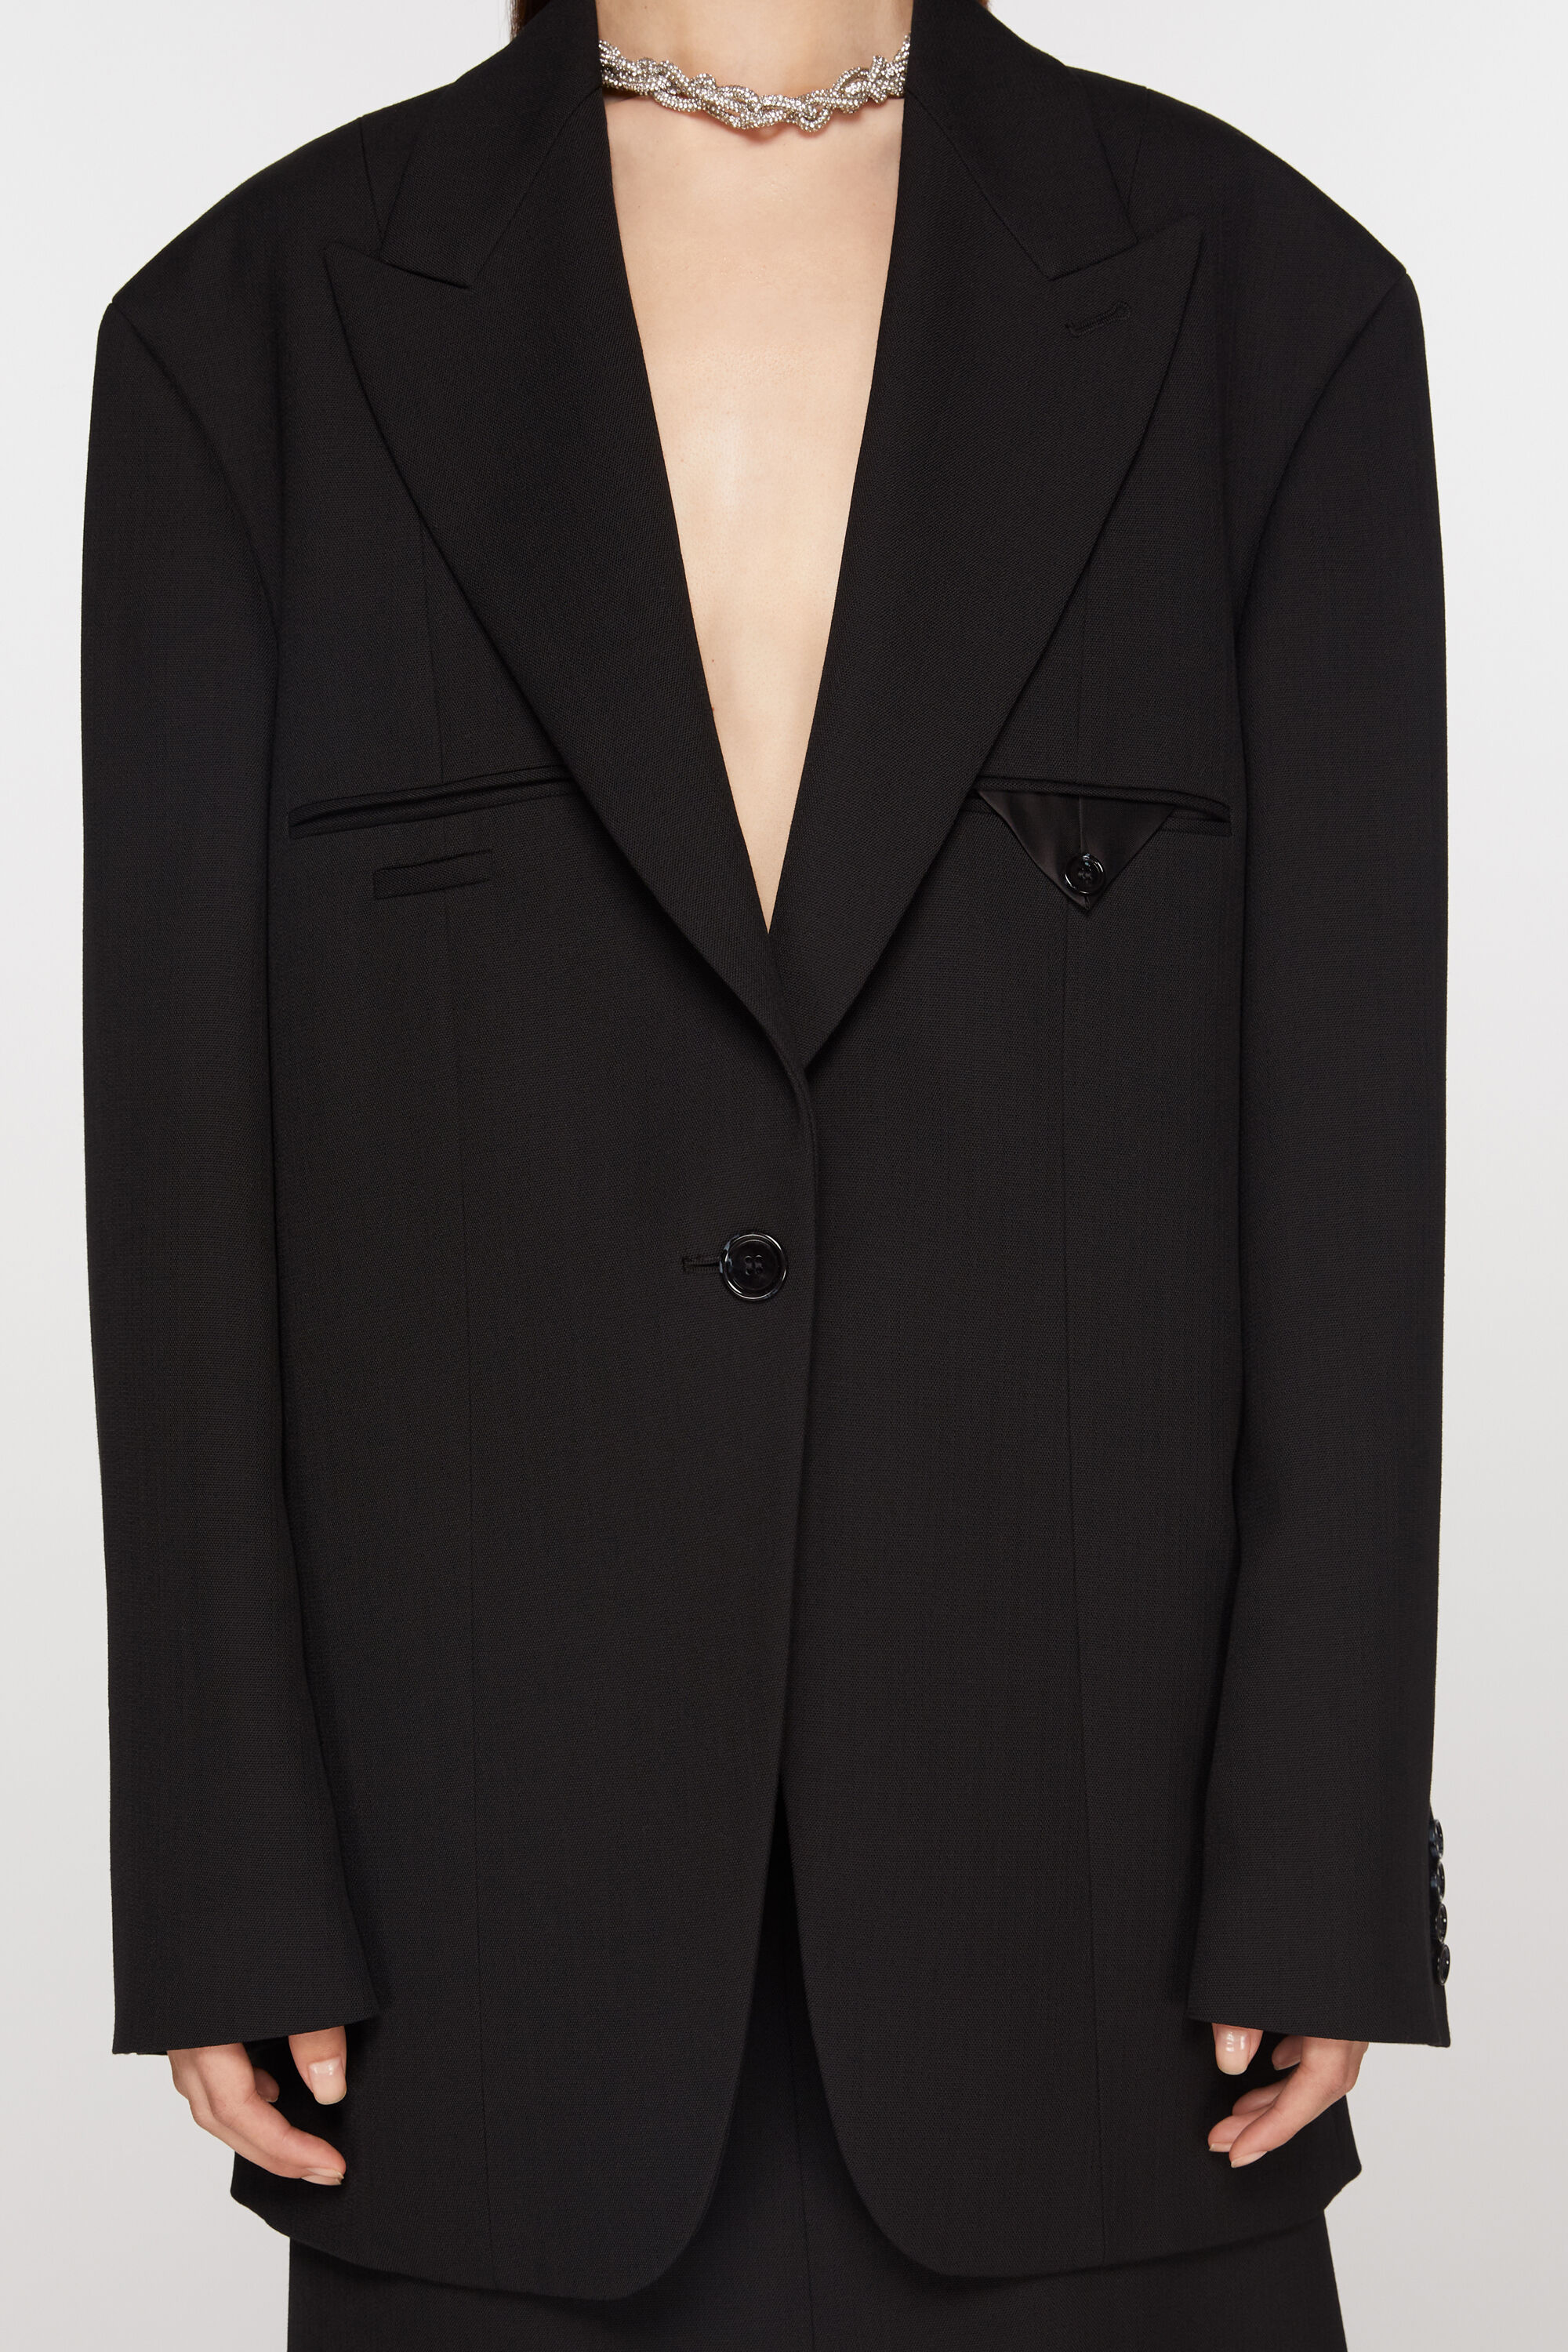 【未使用級品】Acne Studios シングルブレスト スーツジャケット 黒肩幅45cm